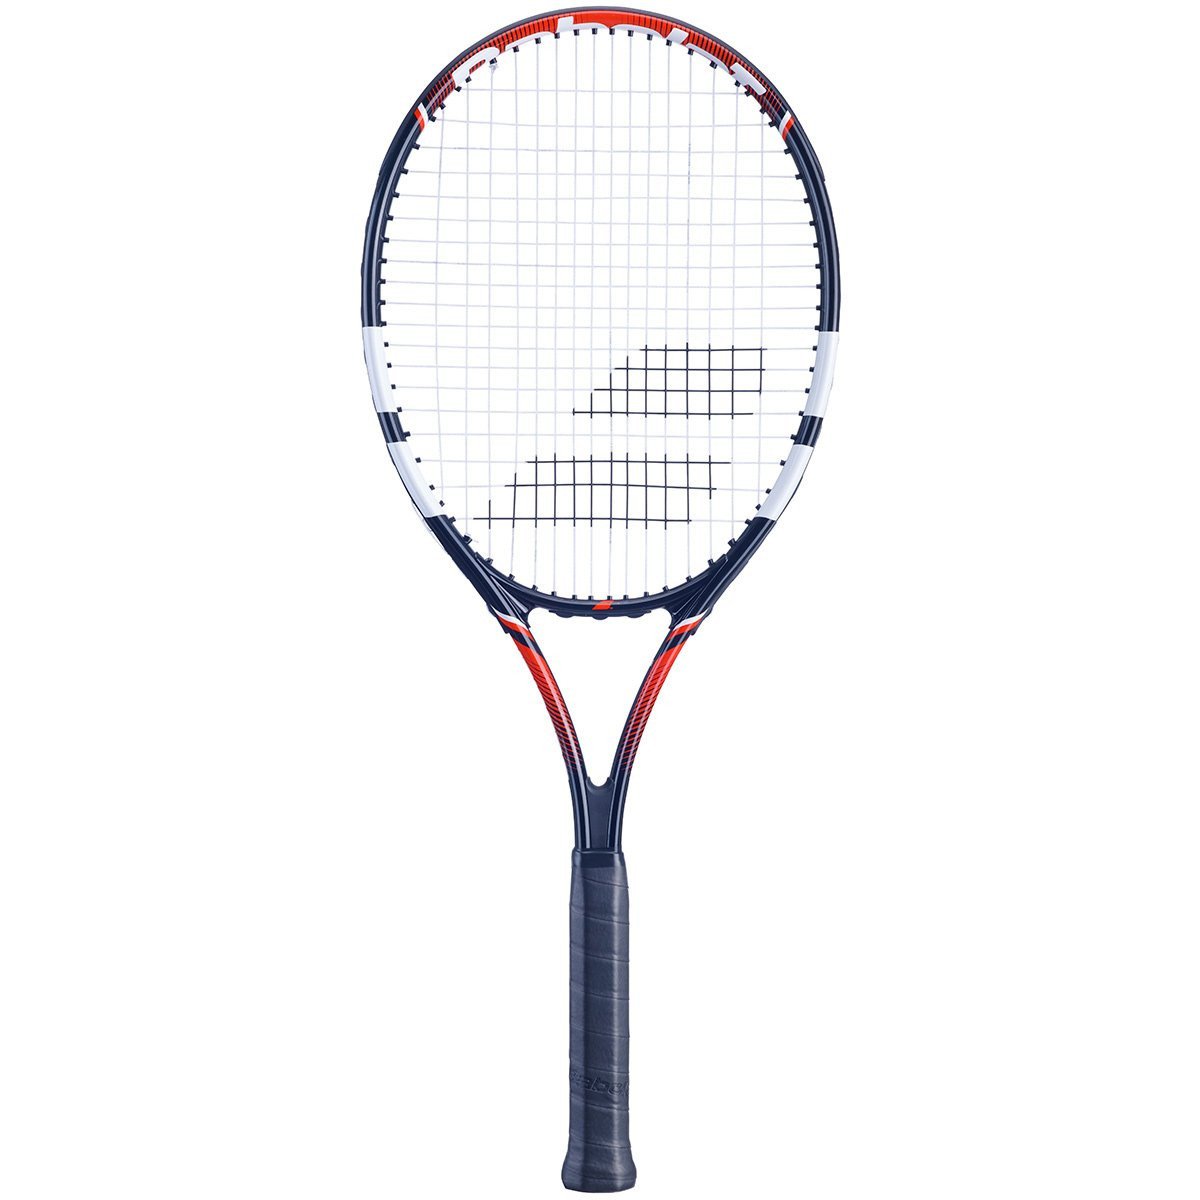 Babolat Falcon Strung Tennisketcher